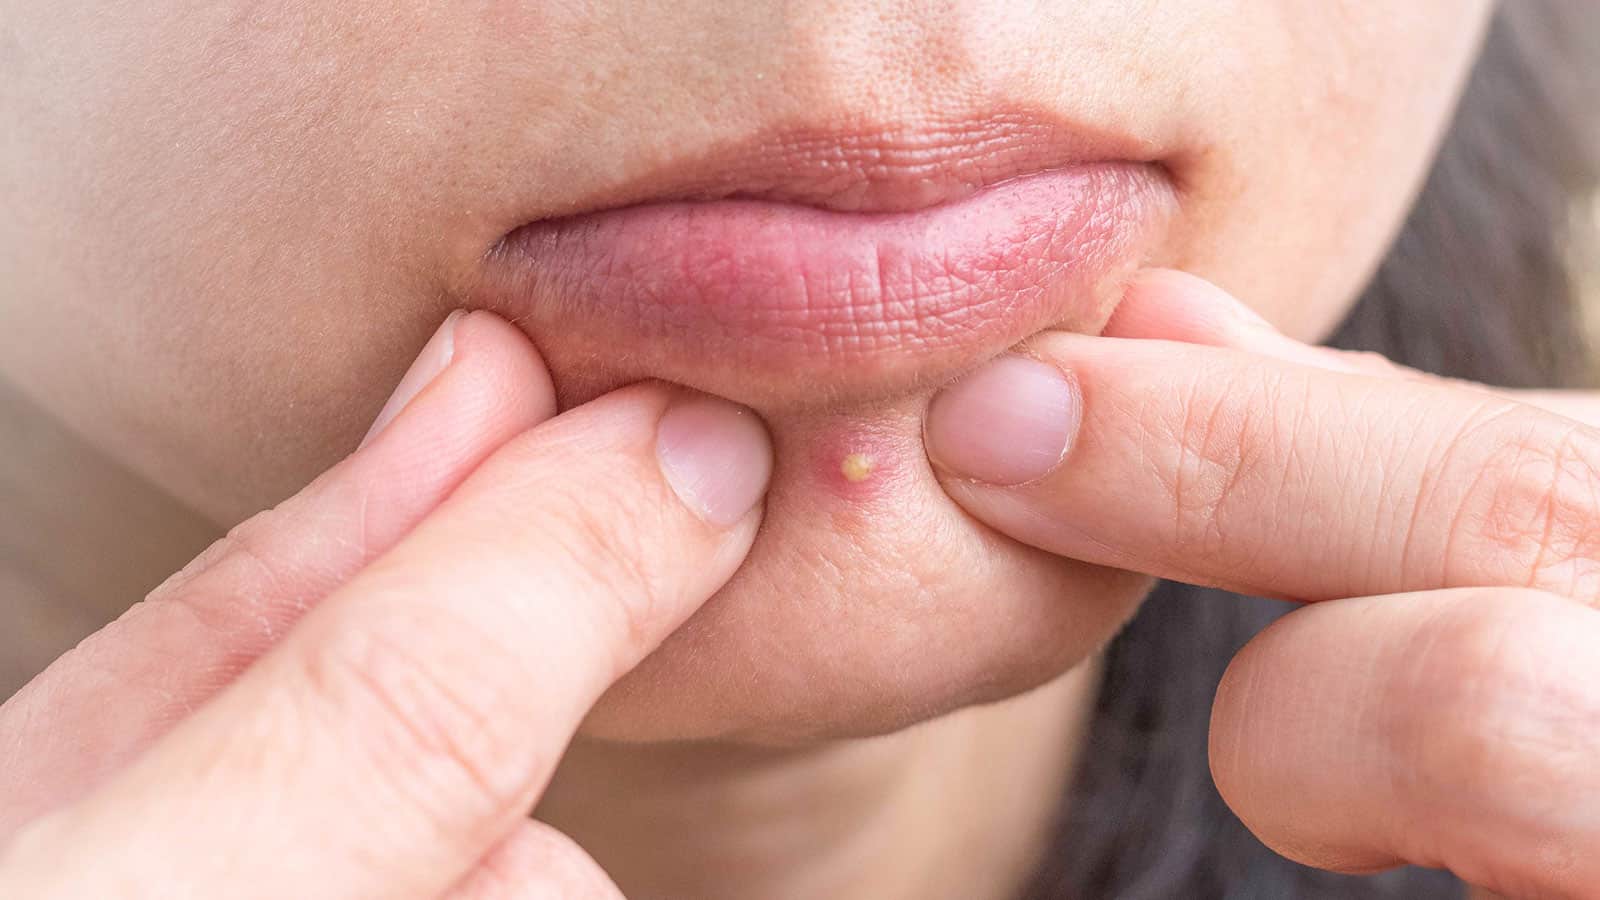 Dermatologists Explain Why You Should Never Pop Pimples